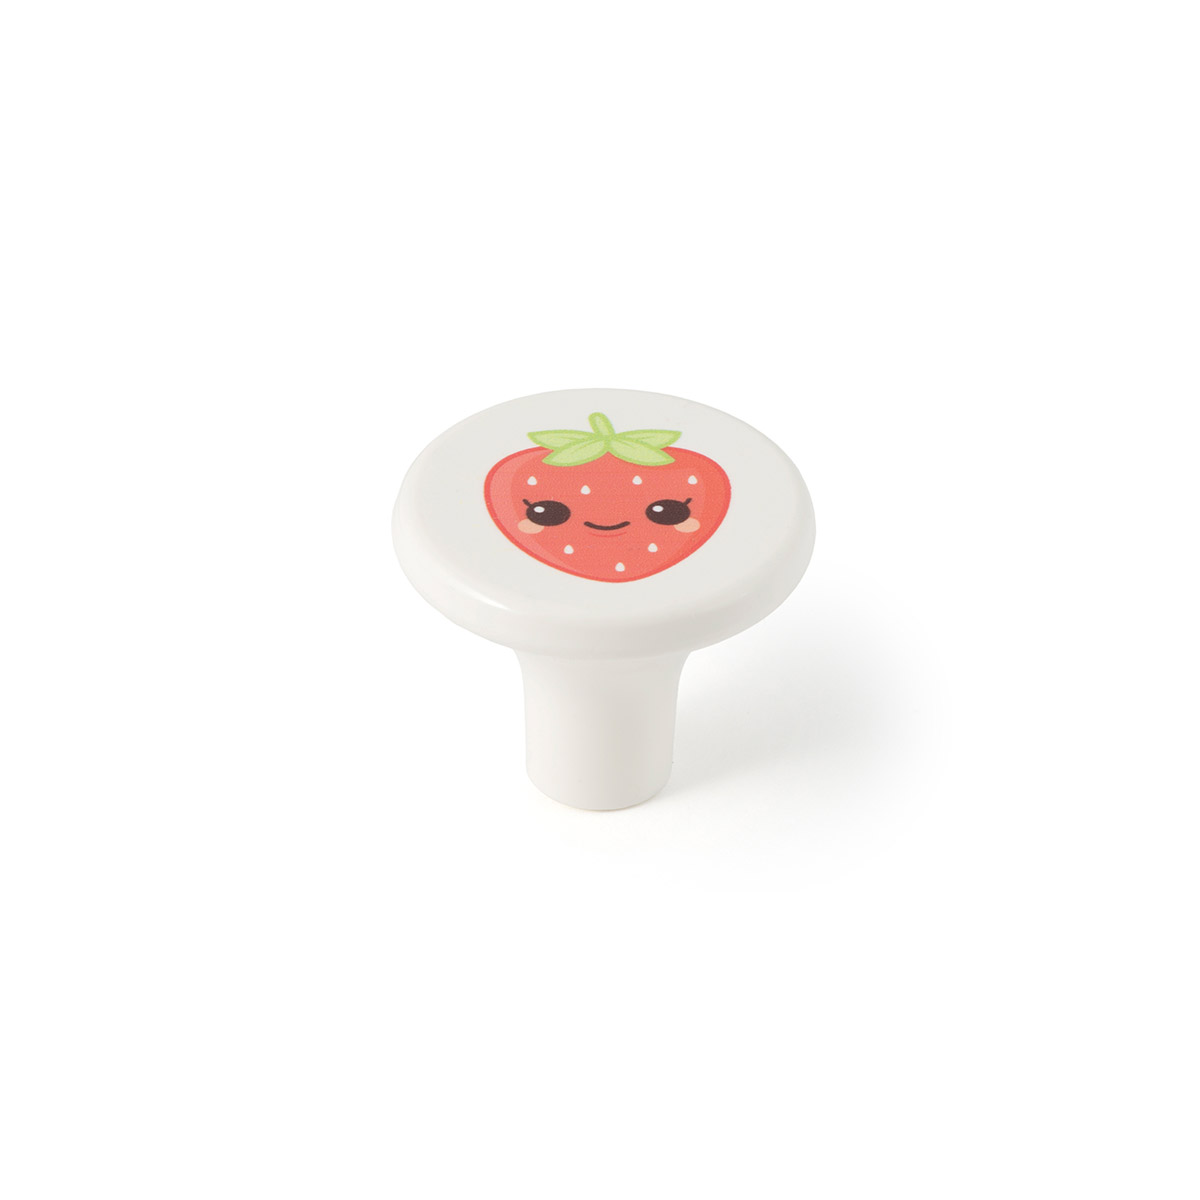 Bouton en plastique finition fraise, dimensions: 33x33x27mm Ø: 33mm